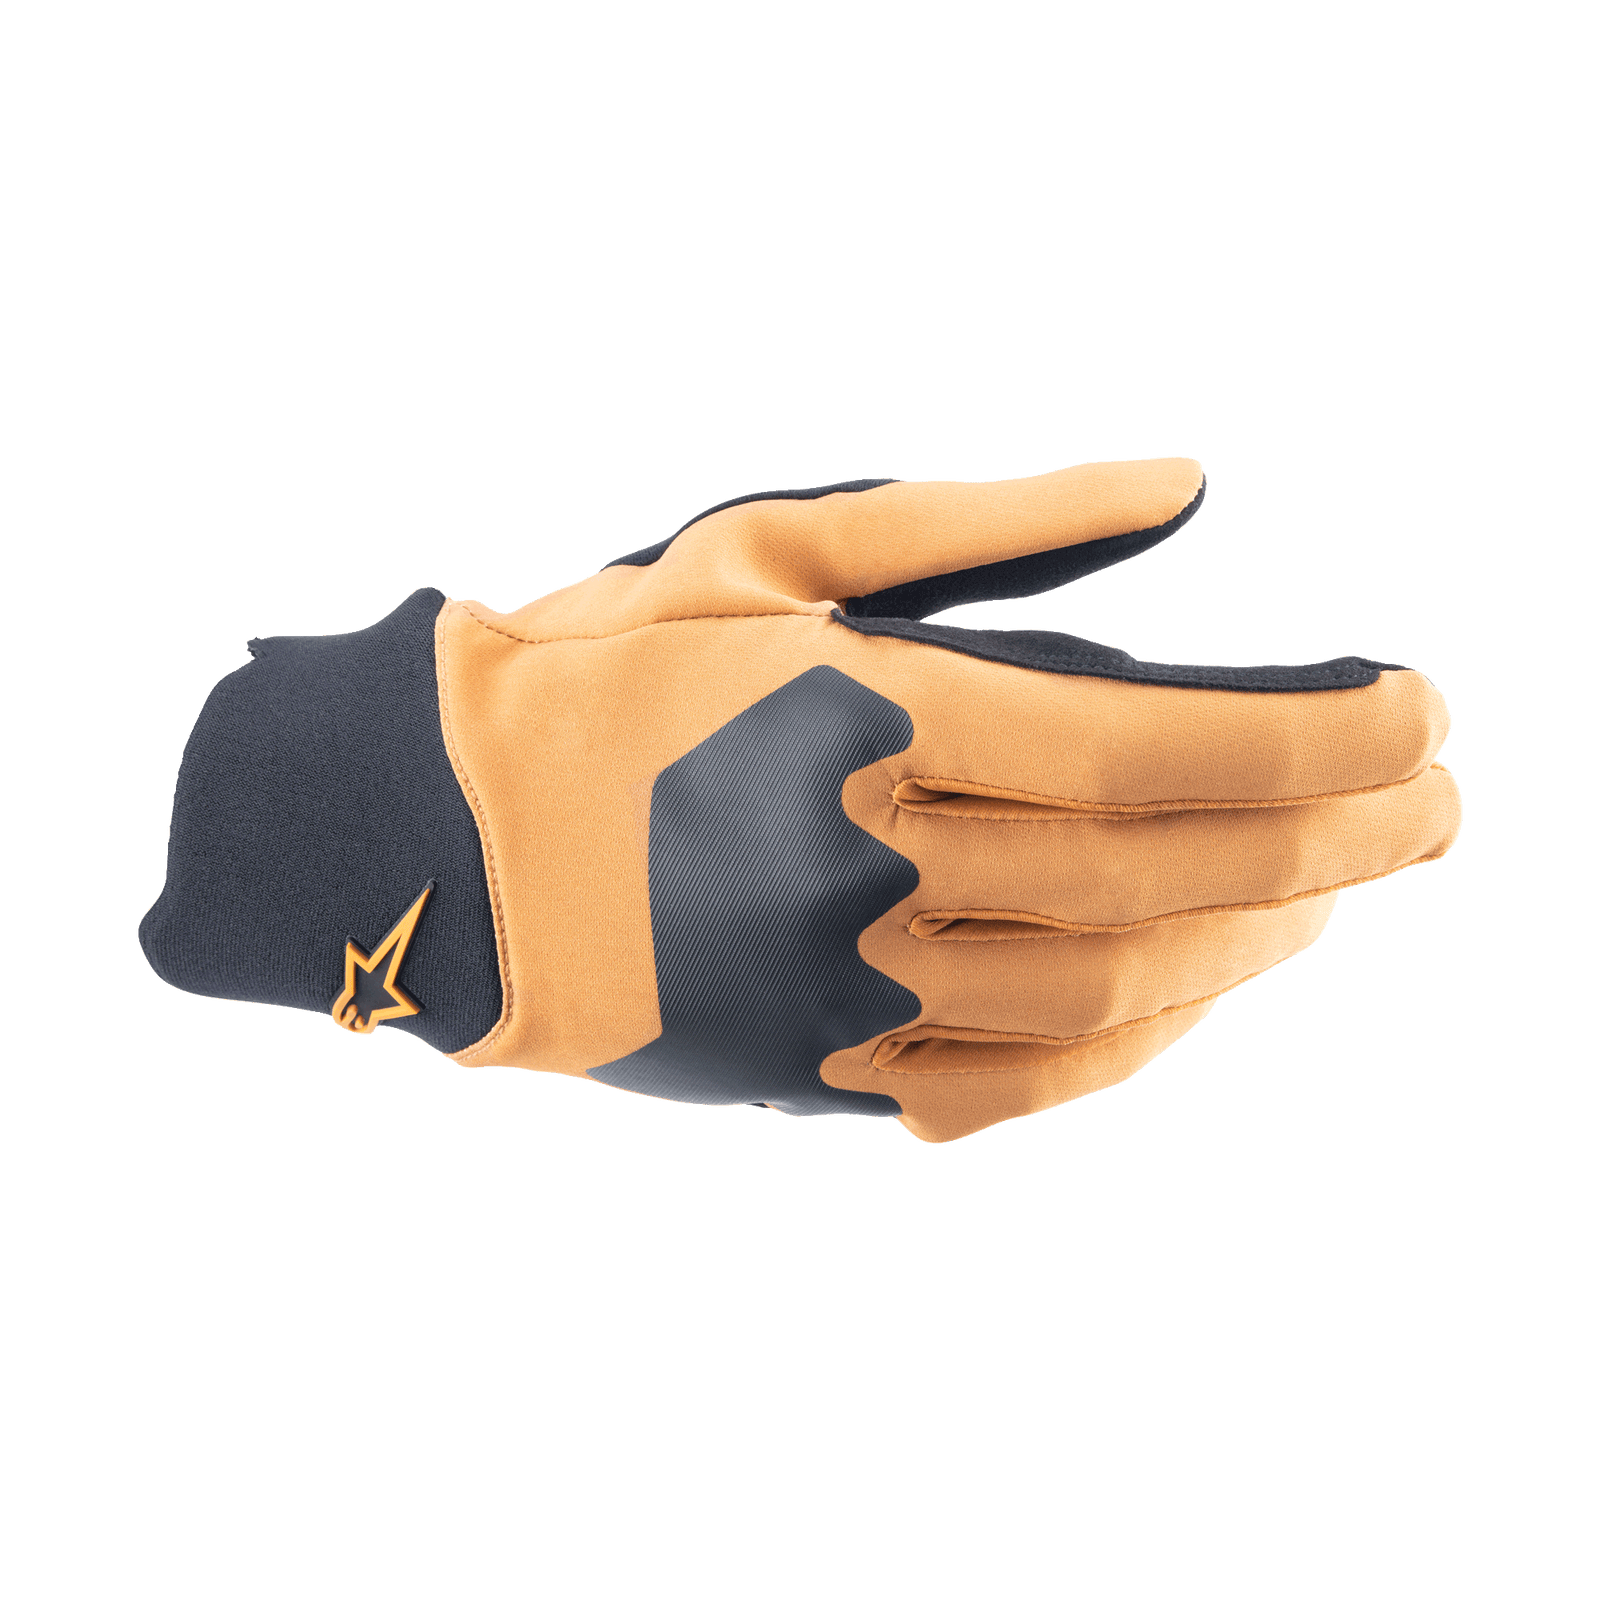 A-Supra Handschuhe